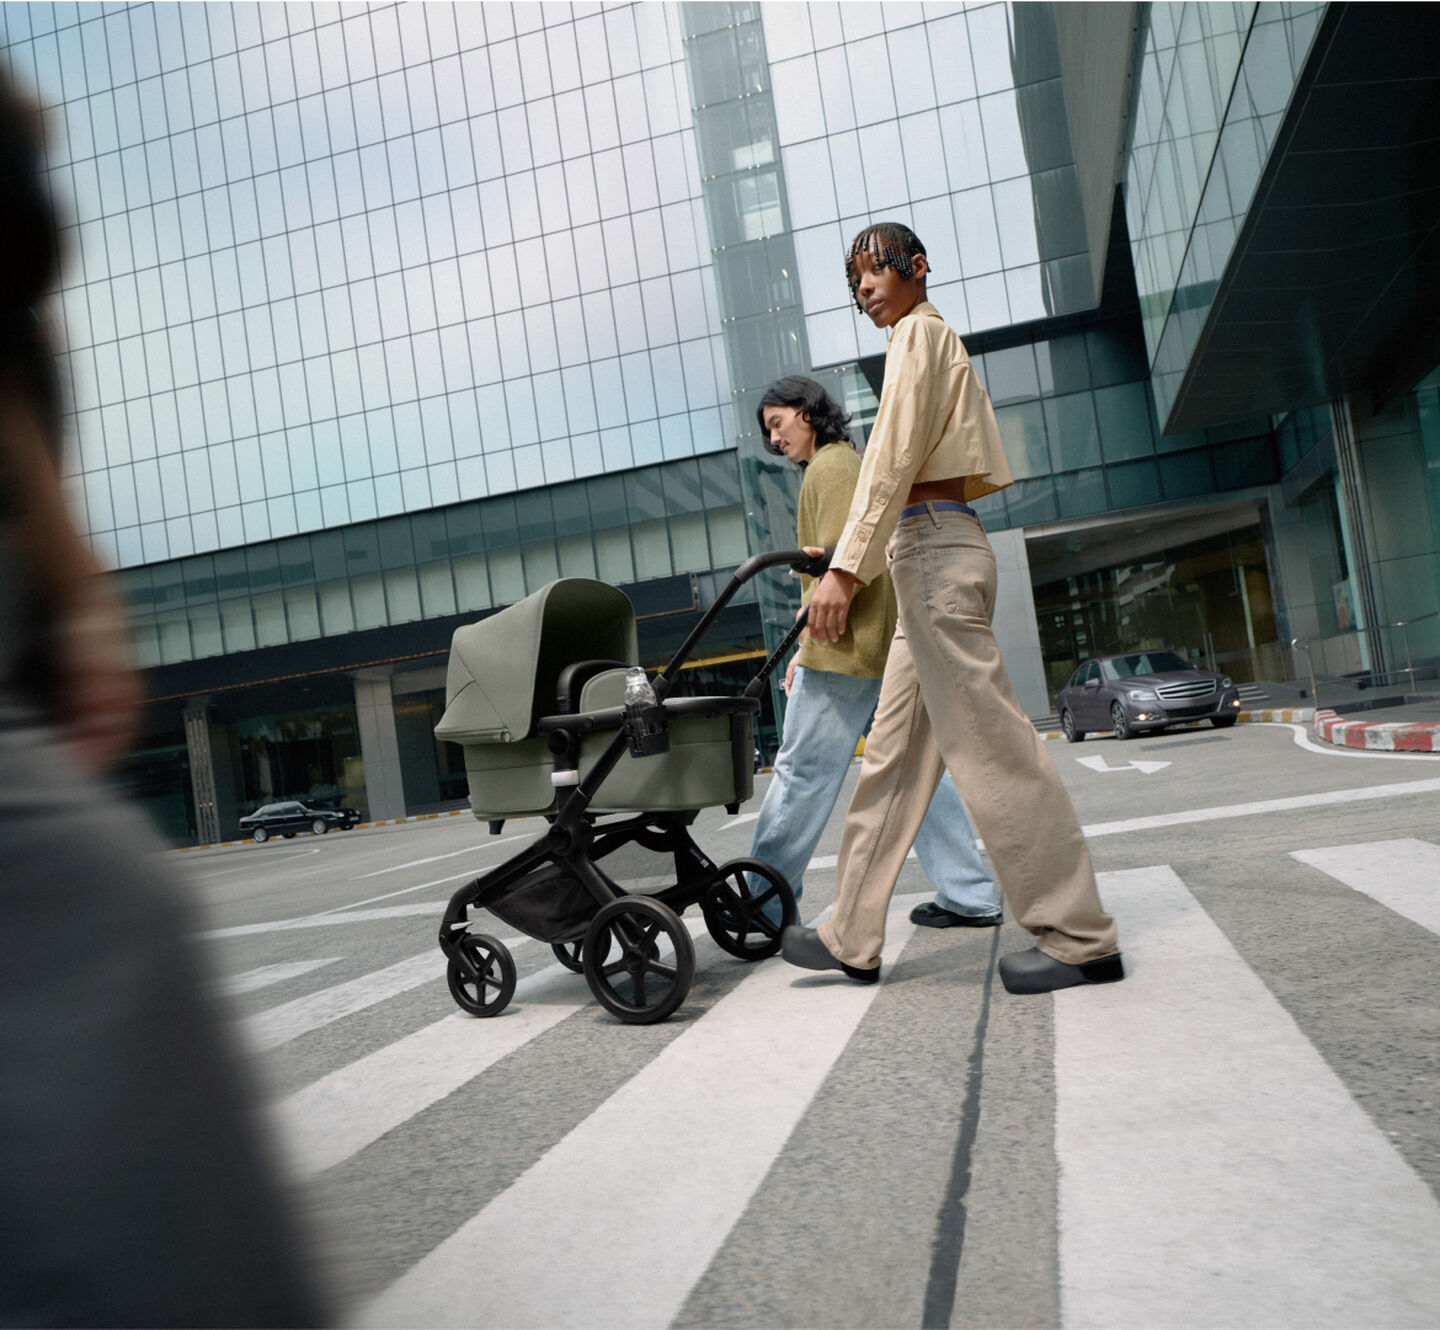 Ett stilmedvetet par promenerar självsäkert med sitt nyfödda barn i en Bugaboo Fox 5-vagn. De är omgivna av höghus i glas.